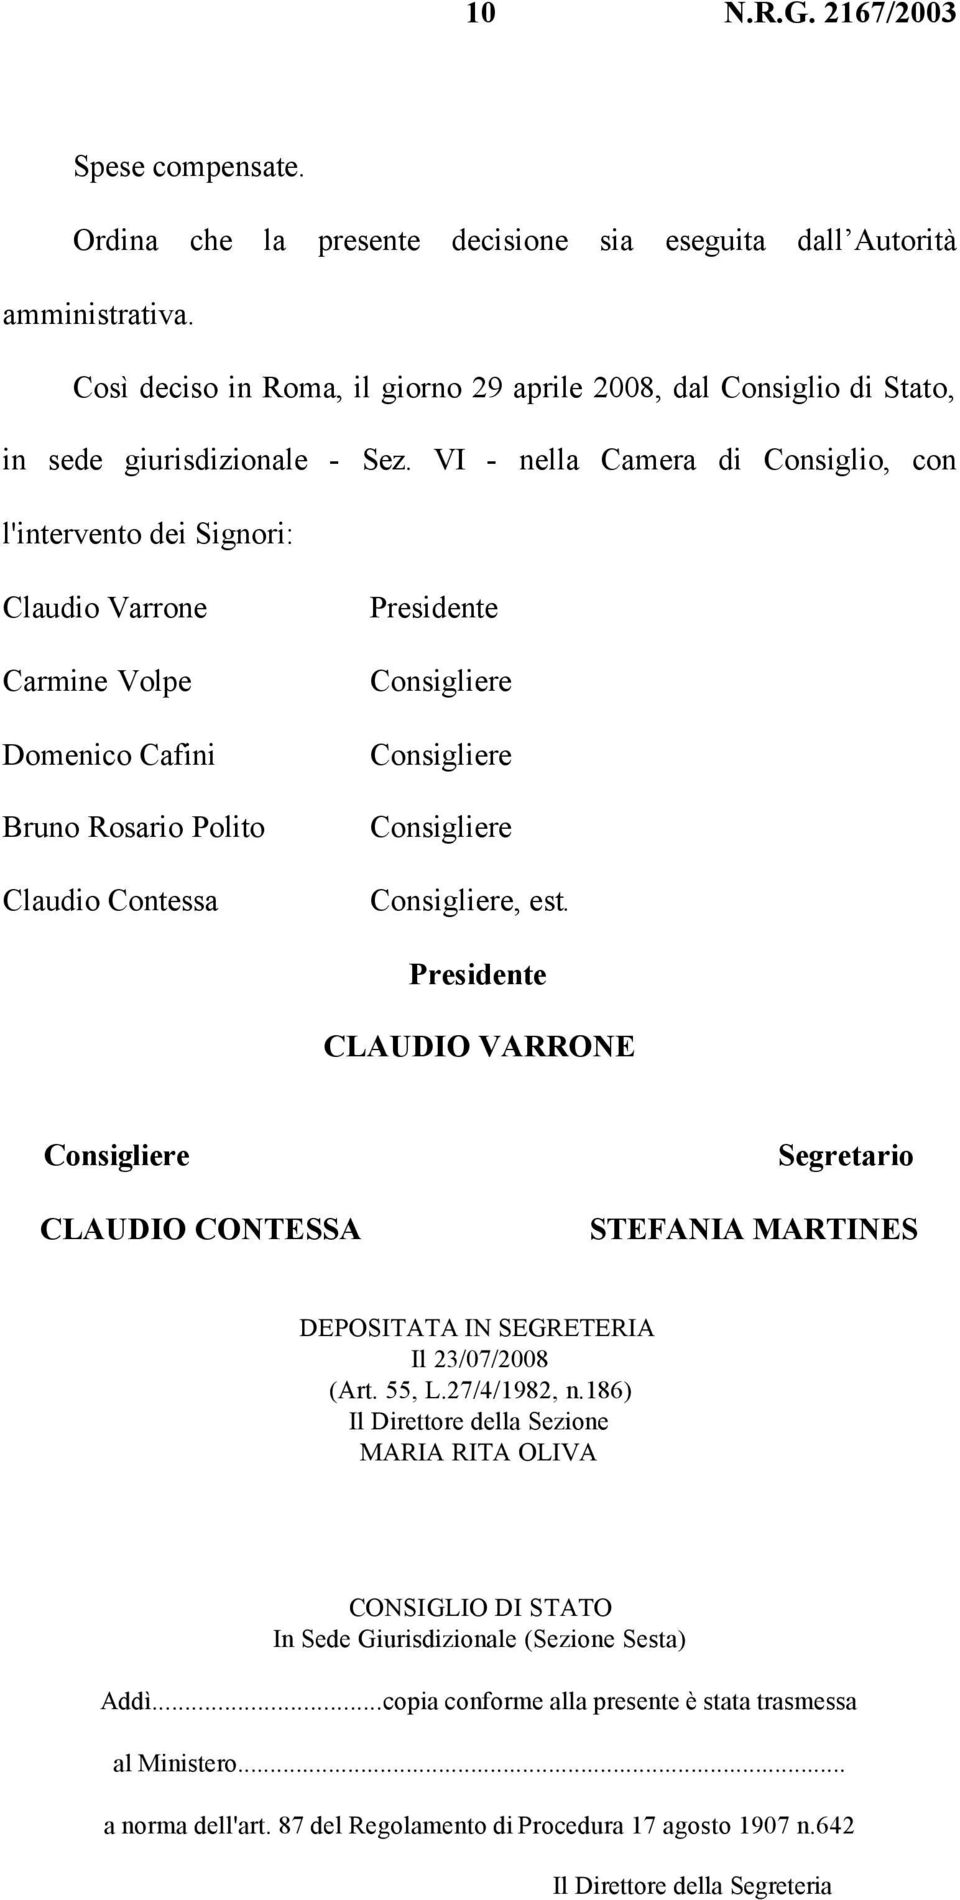 Consigliere, est. Presidente CLAUDIO VARRONE Consigliere CLAUDIO CONTESSA Segretario STEFANIA MARTINES DEPOSITATA IN SEGRETERIA Il 23/07/2008 (Art. 55, L.27/4/1982, n.